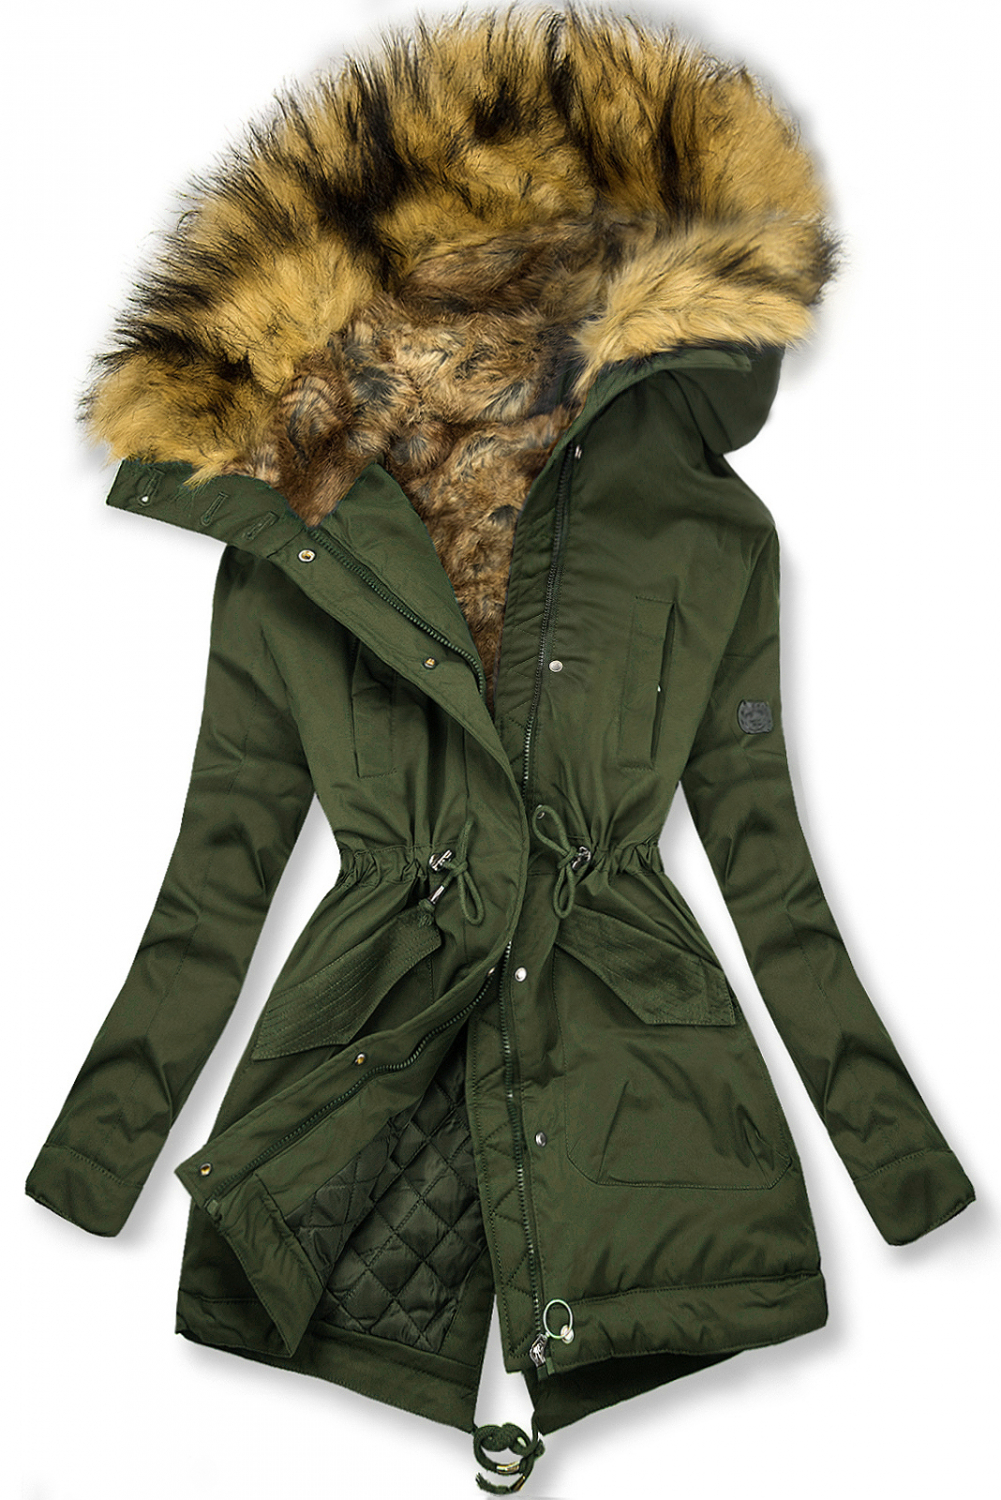 Olivovozelená zimná bunda s vysokým golierom a kožušinou.
- predĺžený strih
- neodopínateľná kapucňa
- neodopínateľná umelá kožušina
- zapínanie na zips a gombíky
- vysoký golier
- v páse nastaviteľné sťahovanie
- dve predné vrecká 
- materiál: 100% polyester